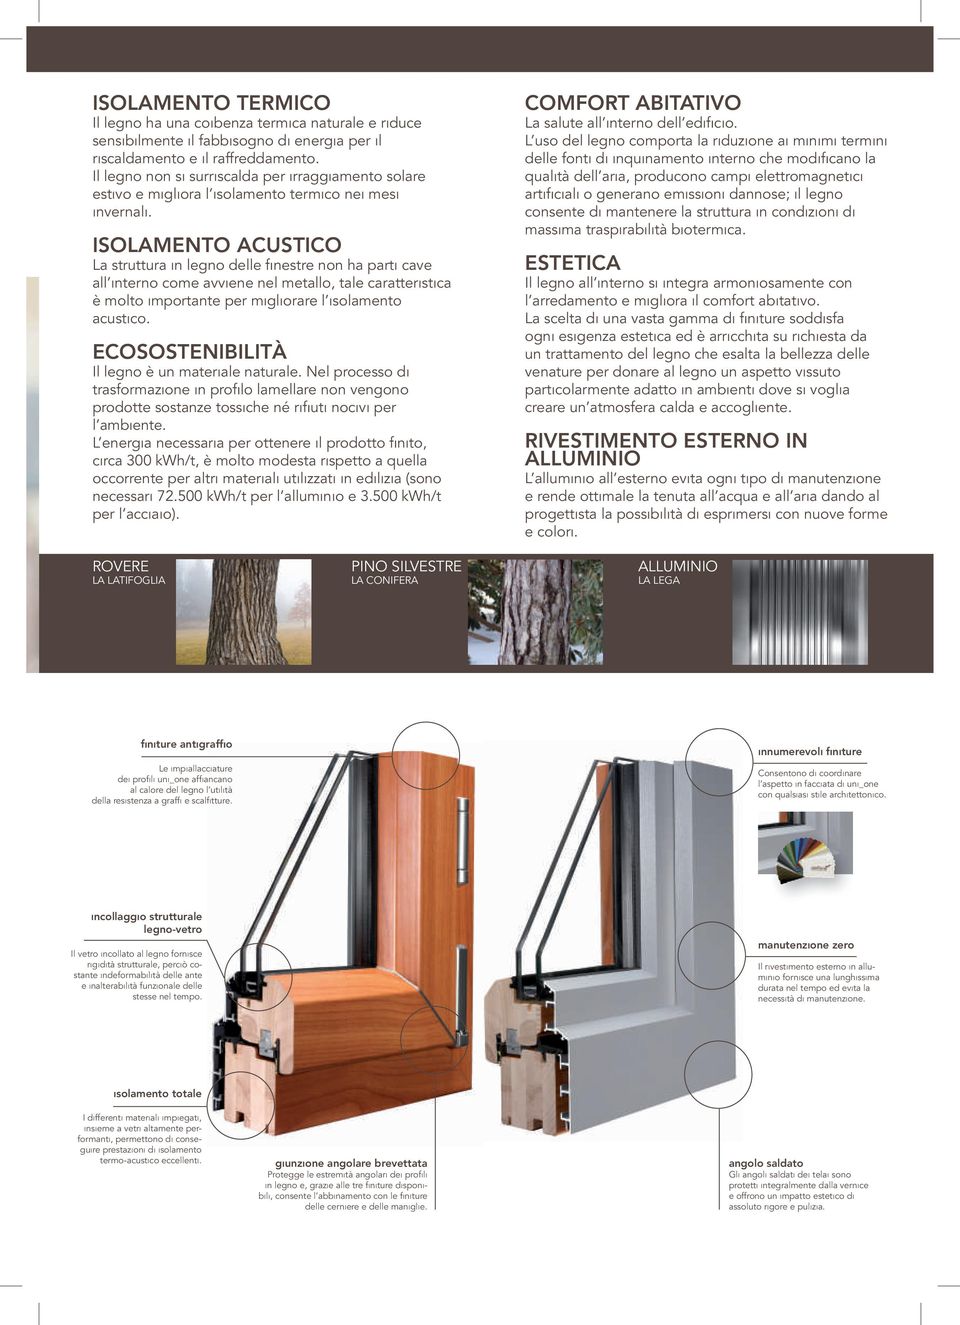 Isolamento acustico La struttura in legno delle inestre non ha parti cave all interno come avviene nel metallo, tale caratteristica è molto importante per migliorare l isolamento acustico.